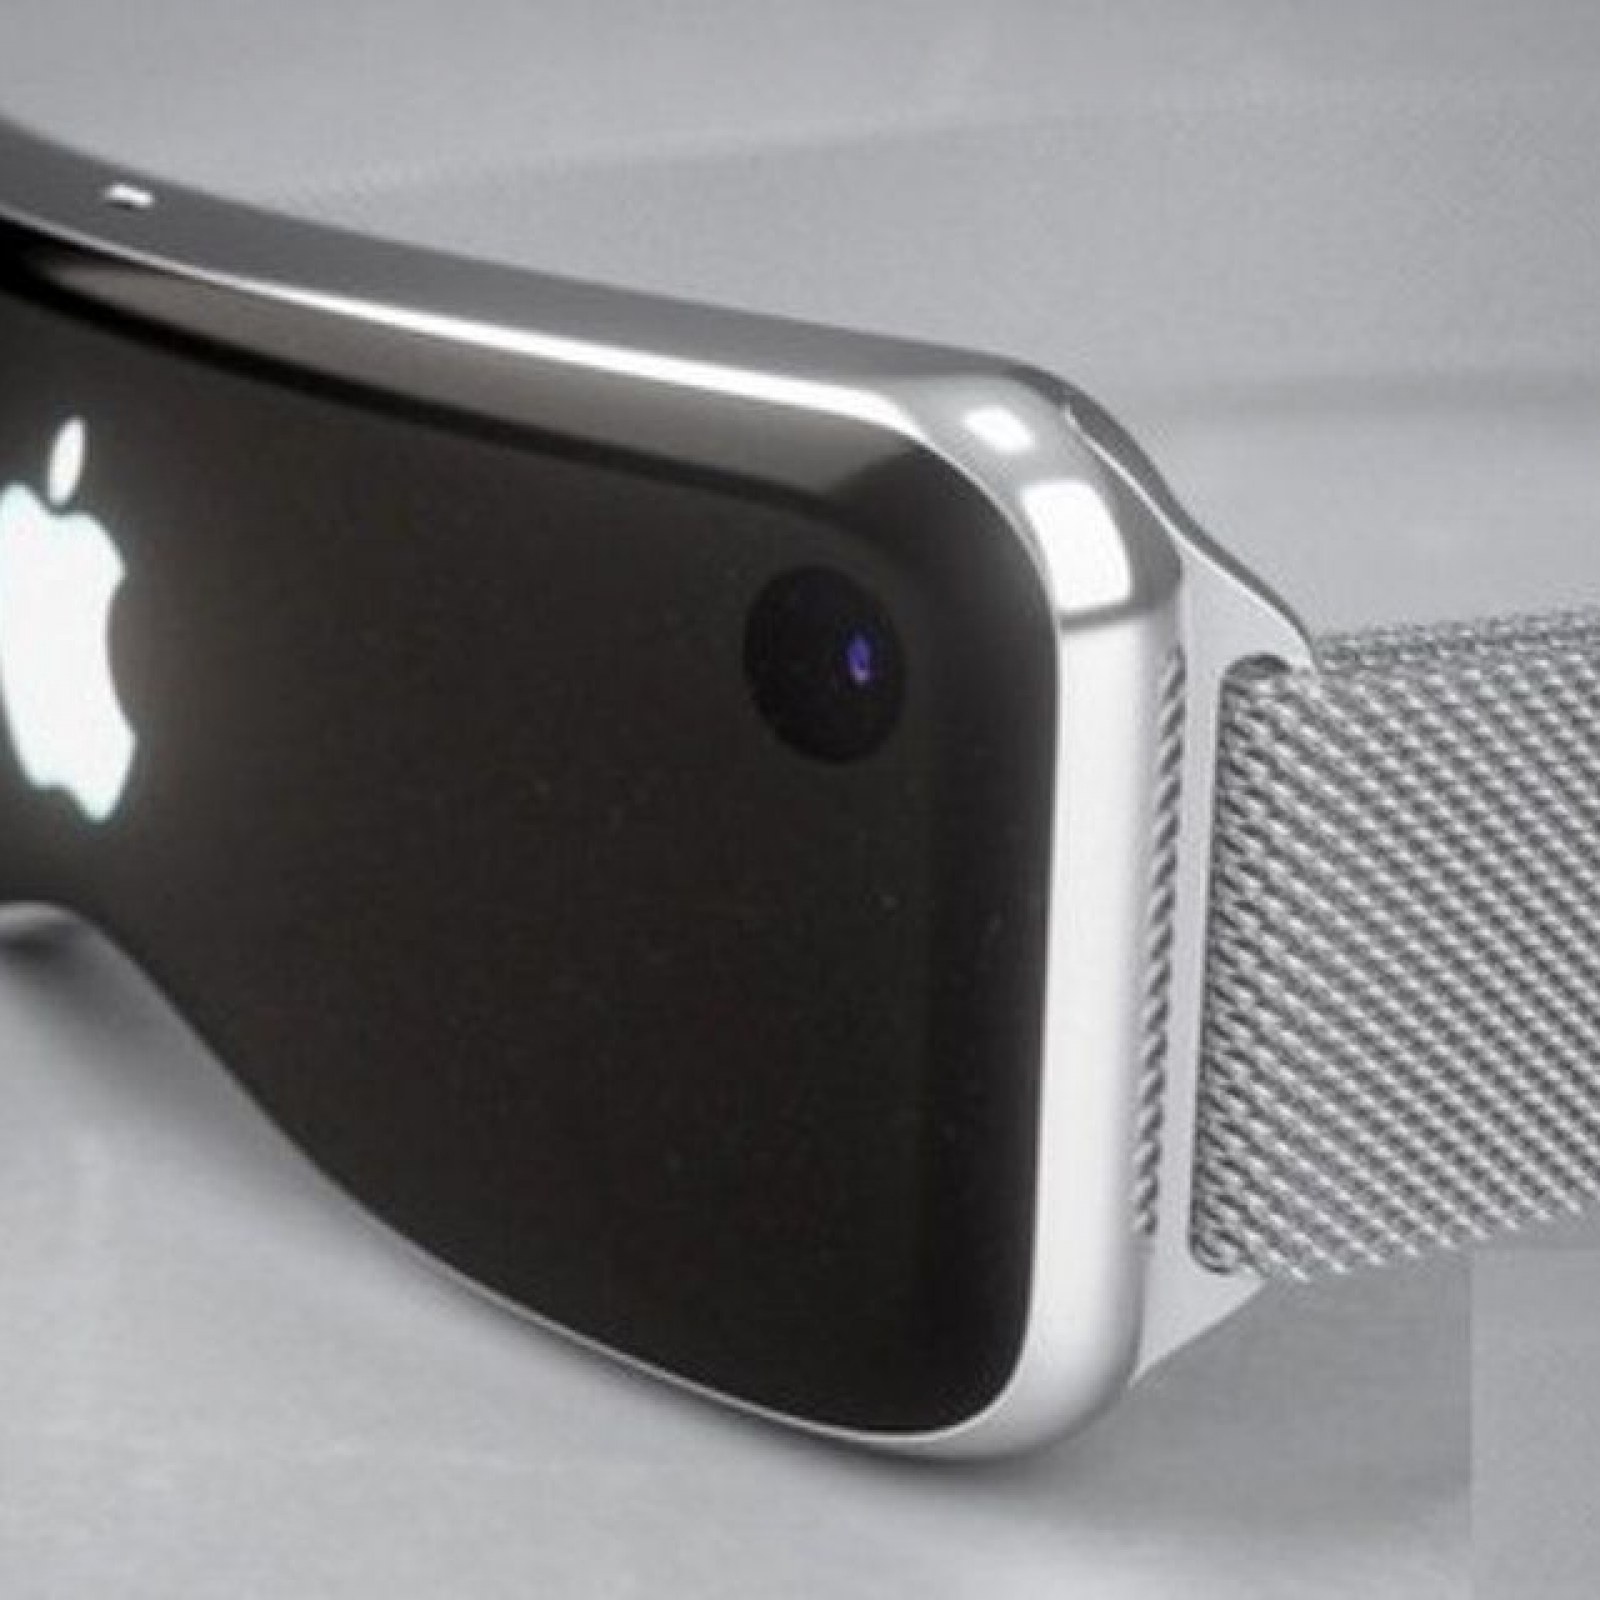 Apple AR gözlük ve AR başlık çıkış tarihlerini açıkladı